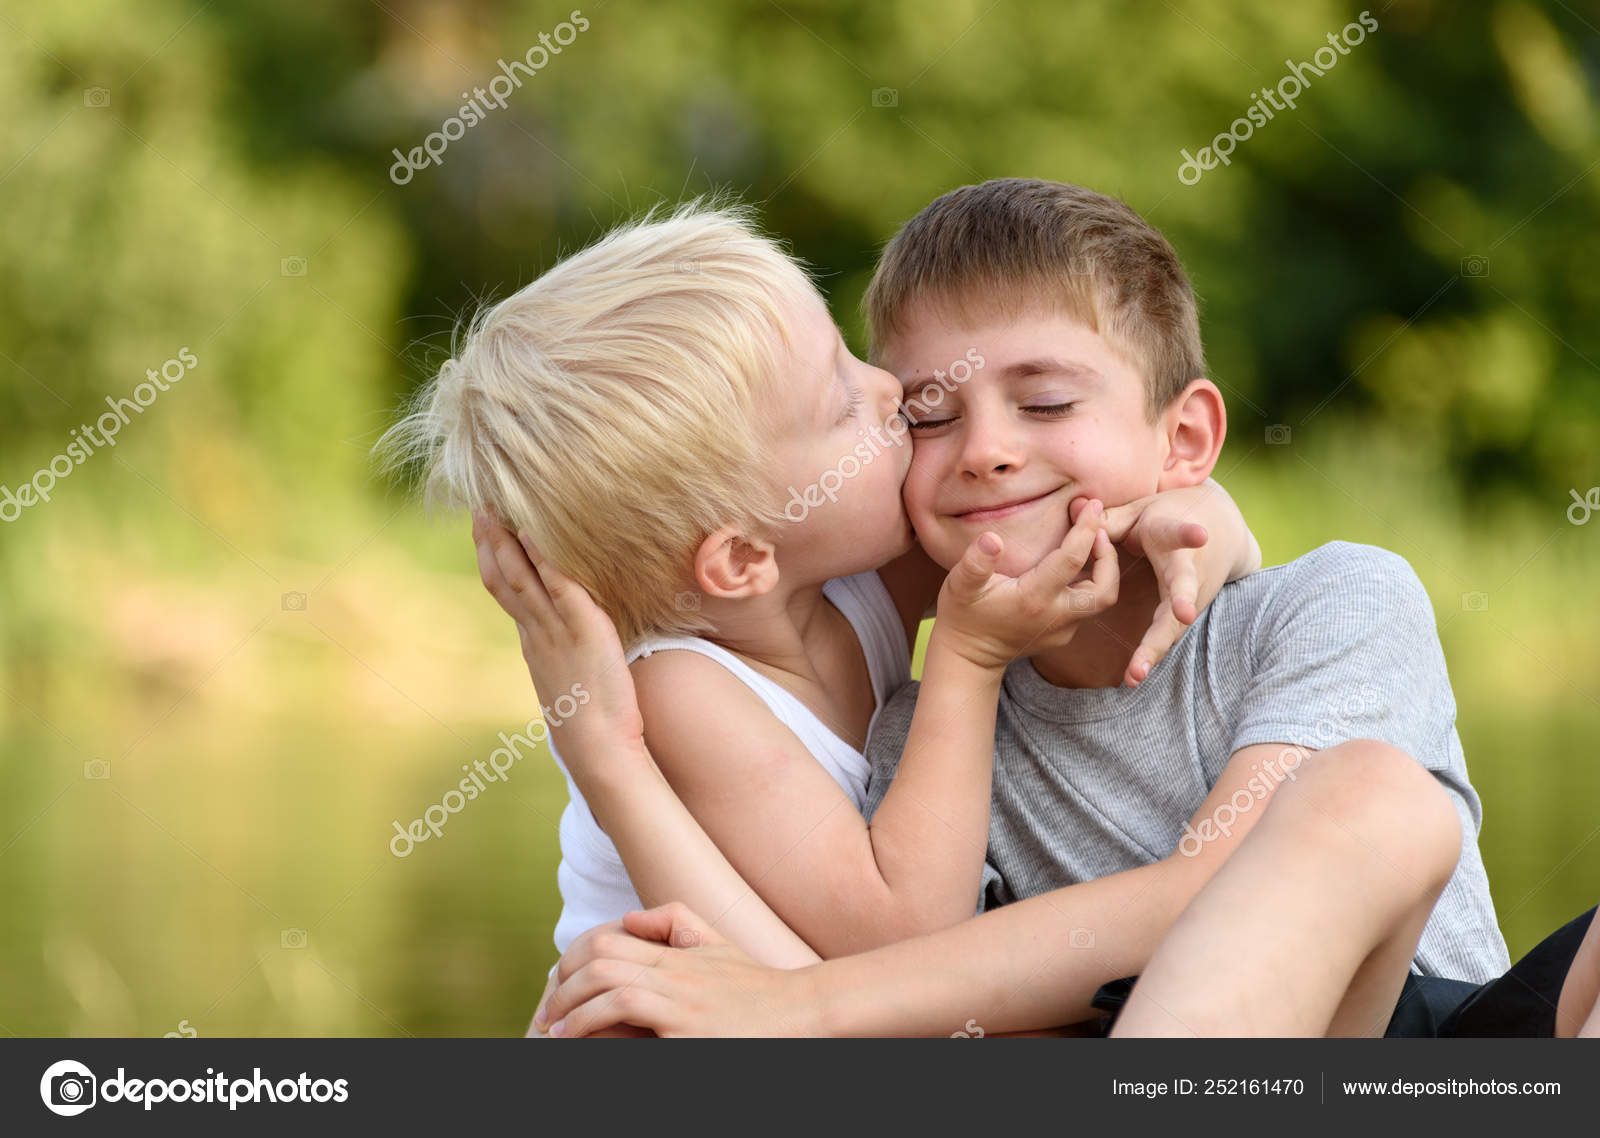 Добро старший брат. Старший брат целует младшего. Дружба братьев старший и младший. Старший и младший брат фото. Брат и сестра поцеловались.